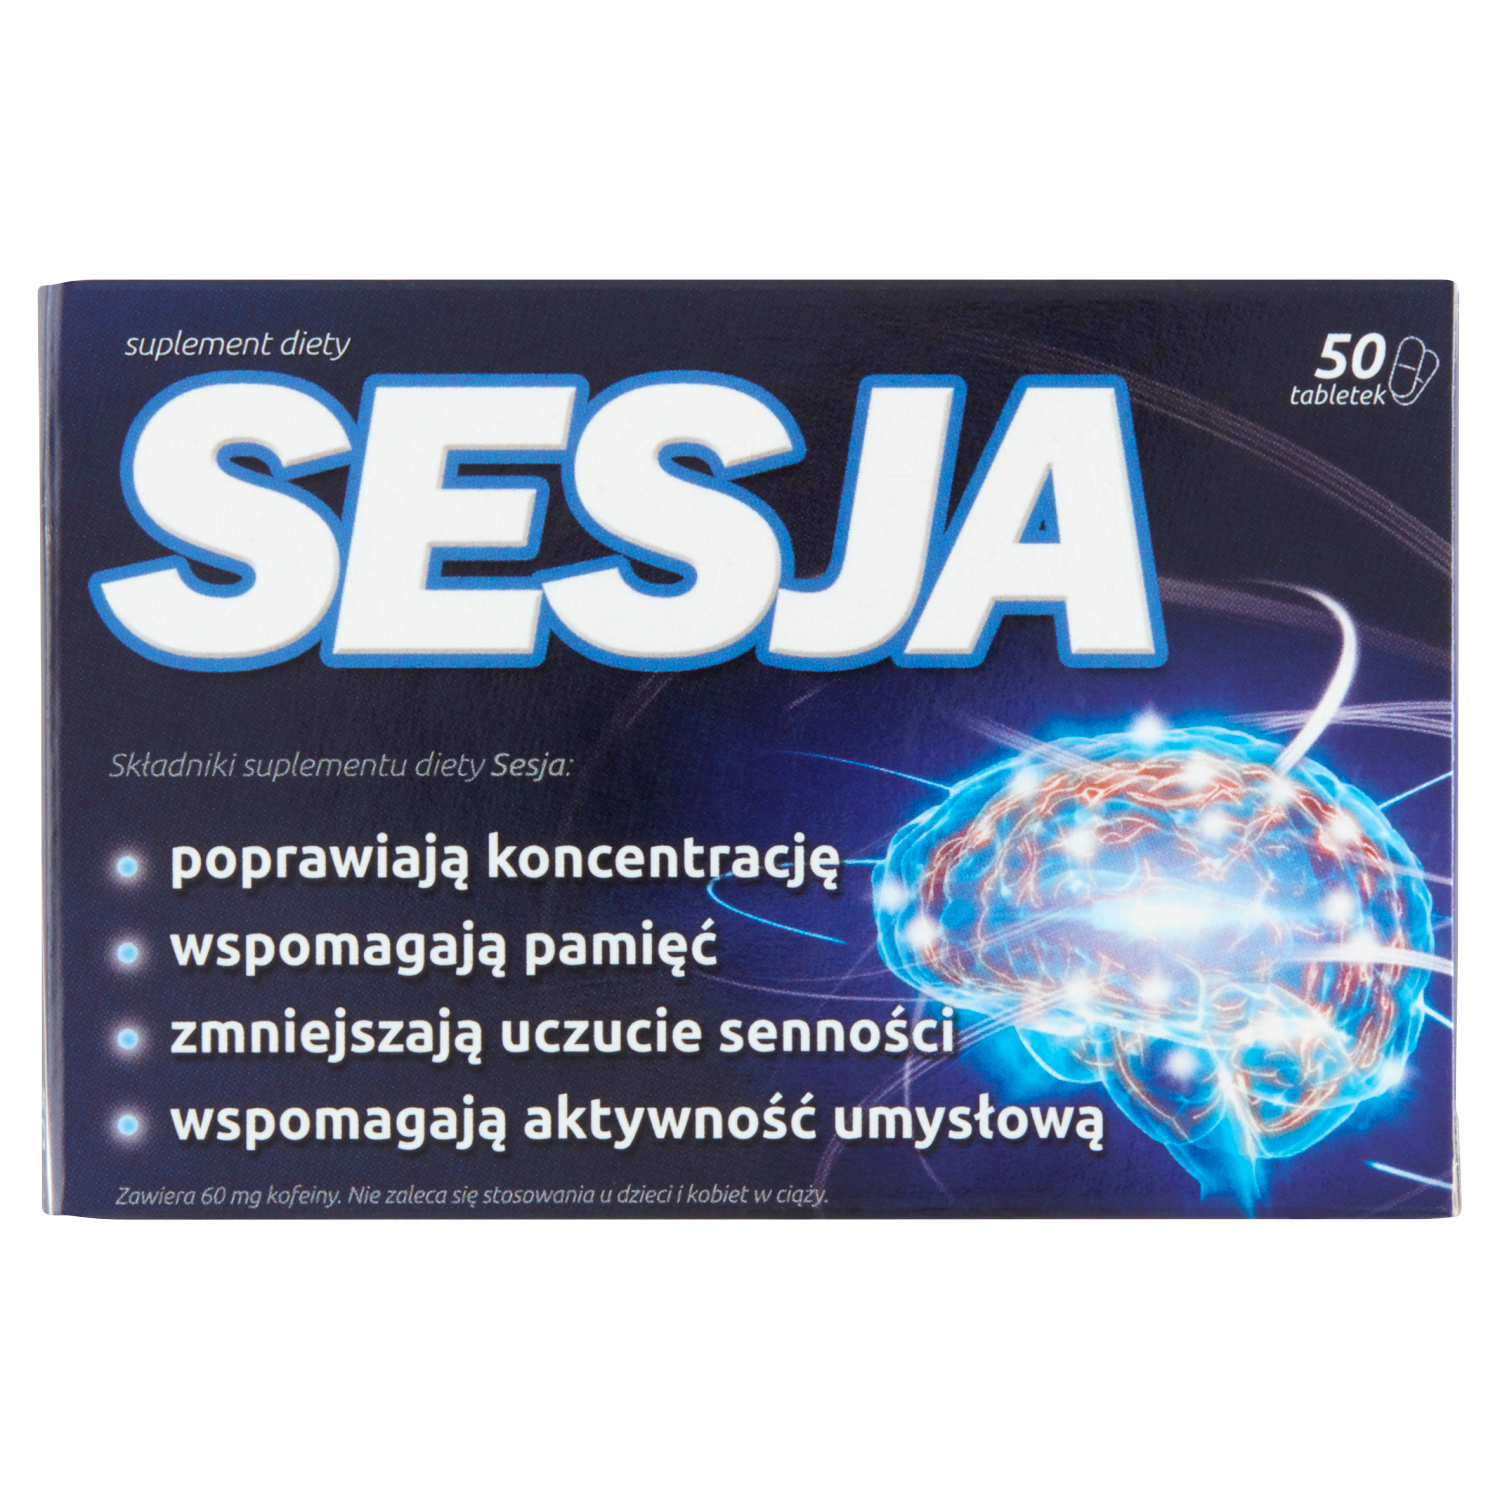 linea detox биологически активная добавка 60 таблеток 1 упаковка Sesja биологически активная добавка, 50 таблеток/1 упаковка